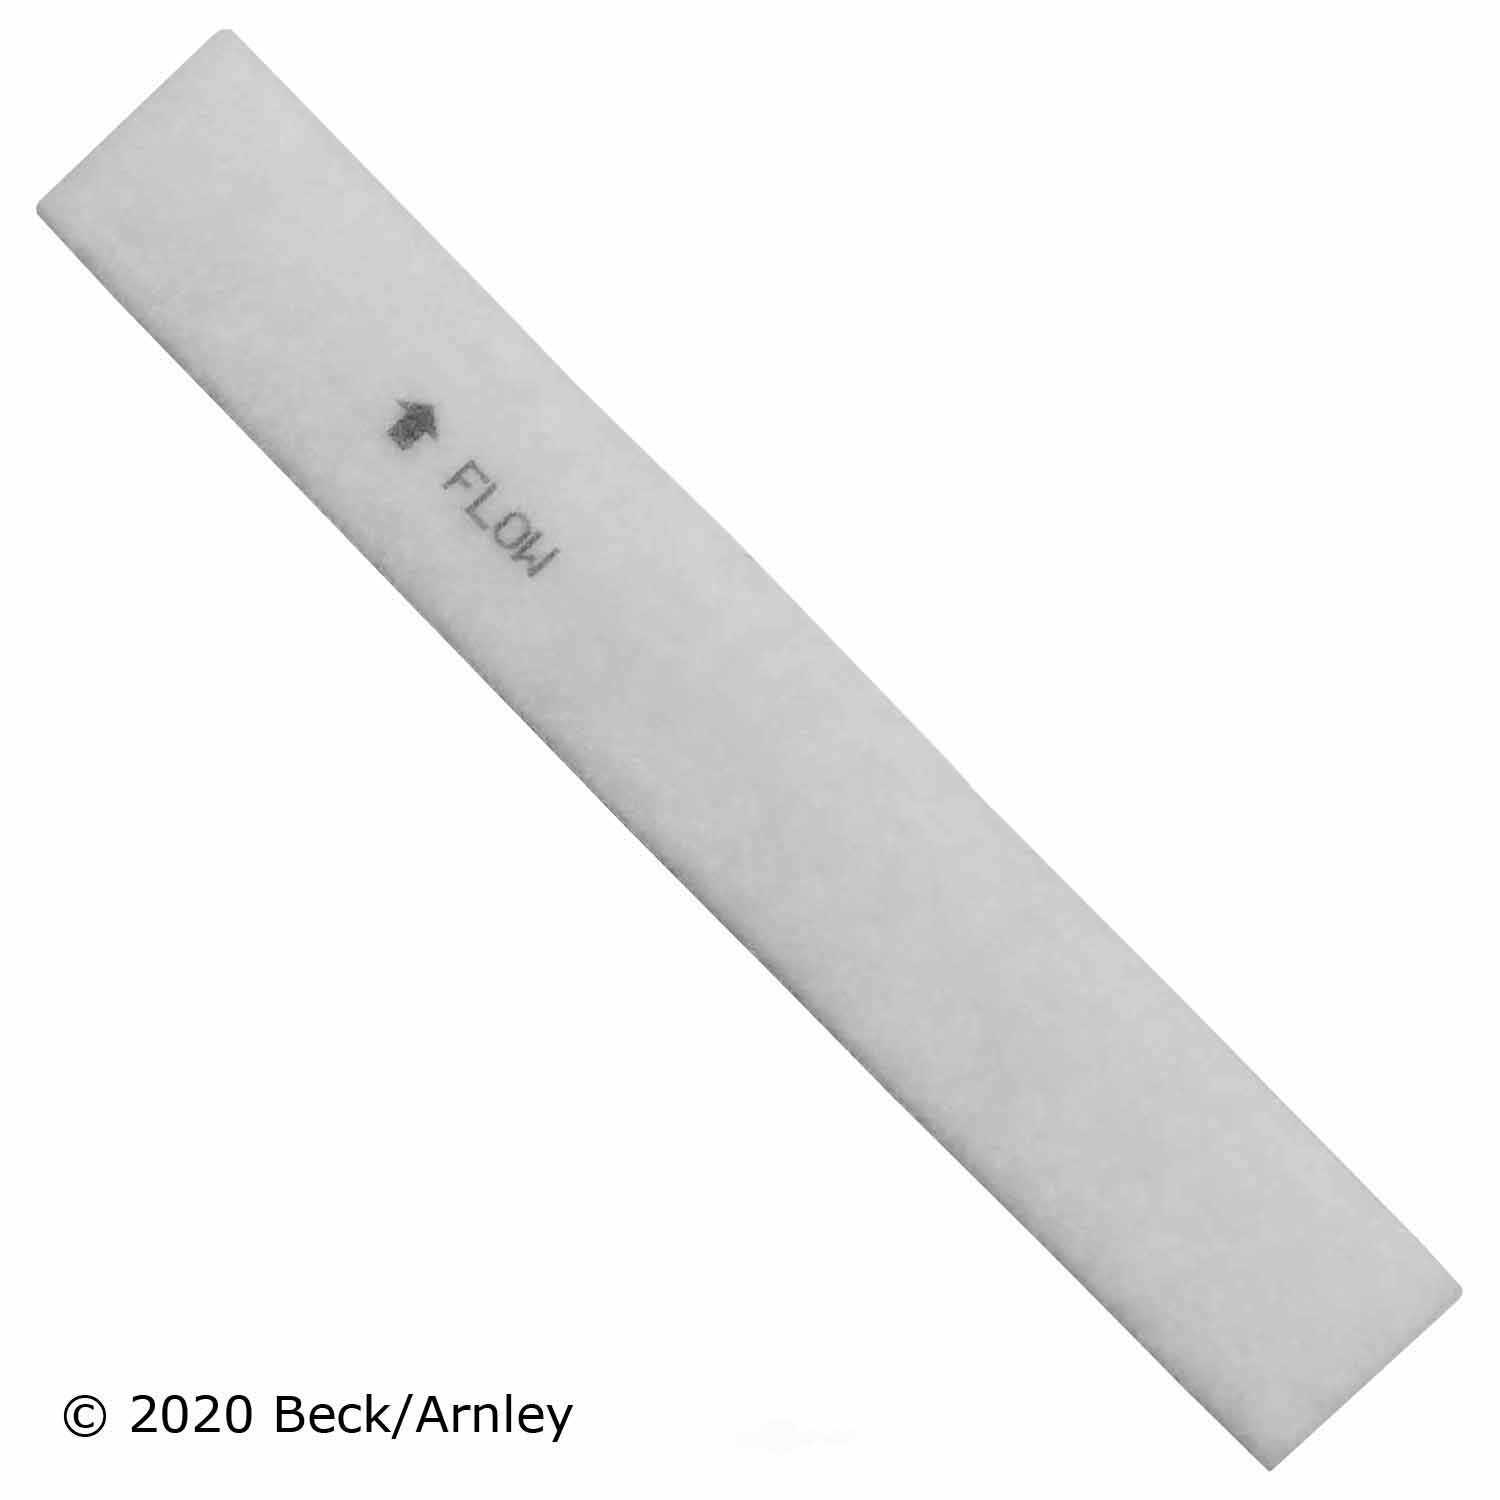 BECK/ARNLEY - Cabin Air Filter - BAR 042-2082